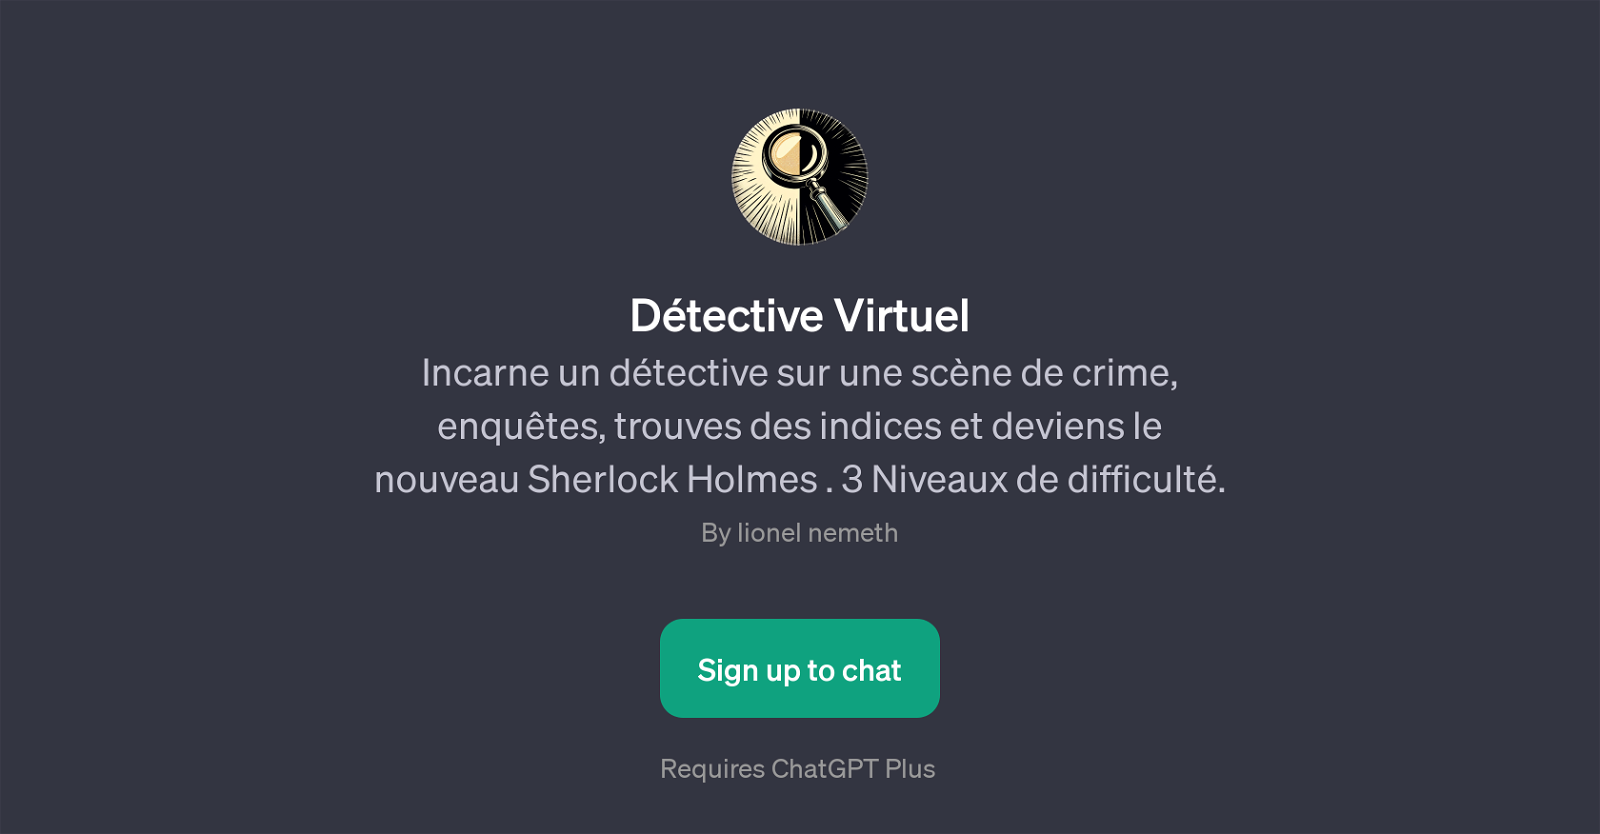 Dtective Virtuel website